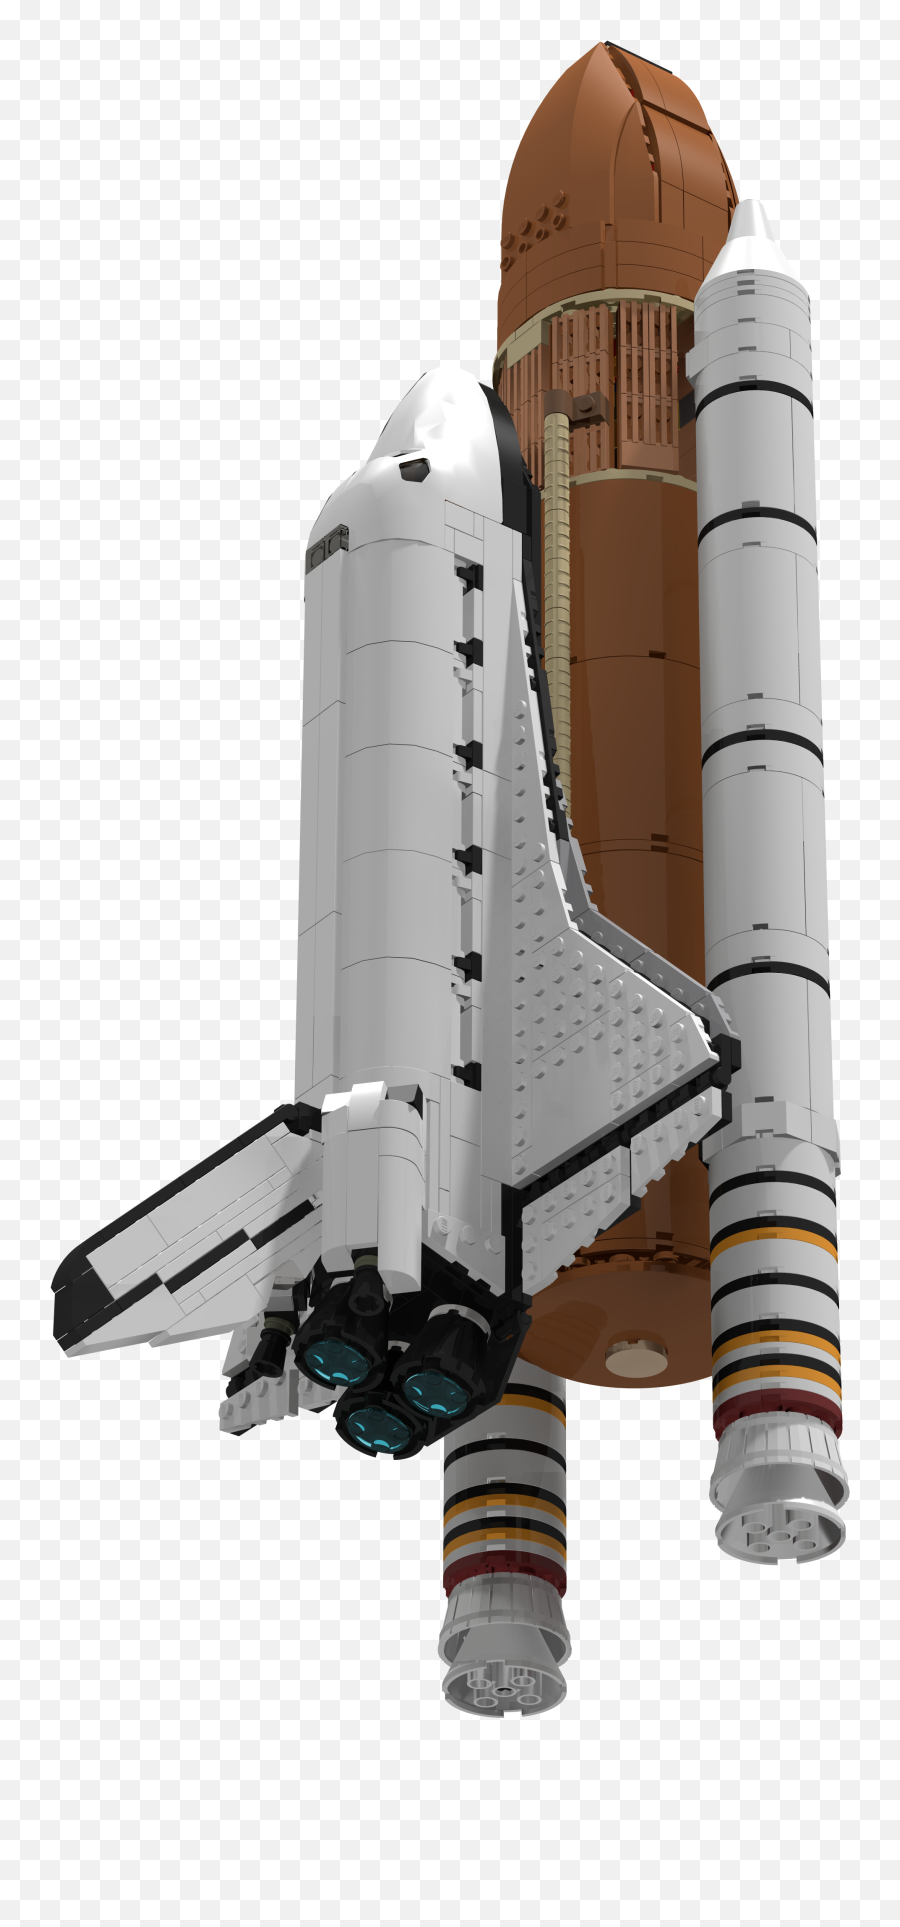 Lego Space Shuttle At Saturn V Scale Emoji,Space Shuttle Emoji